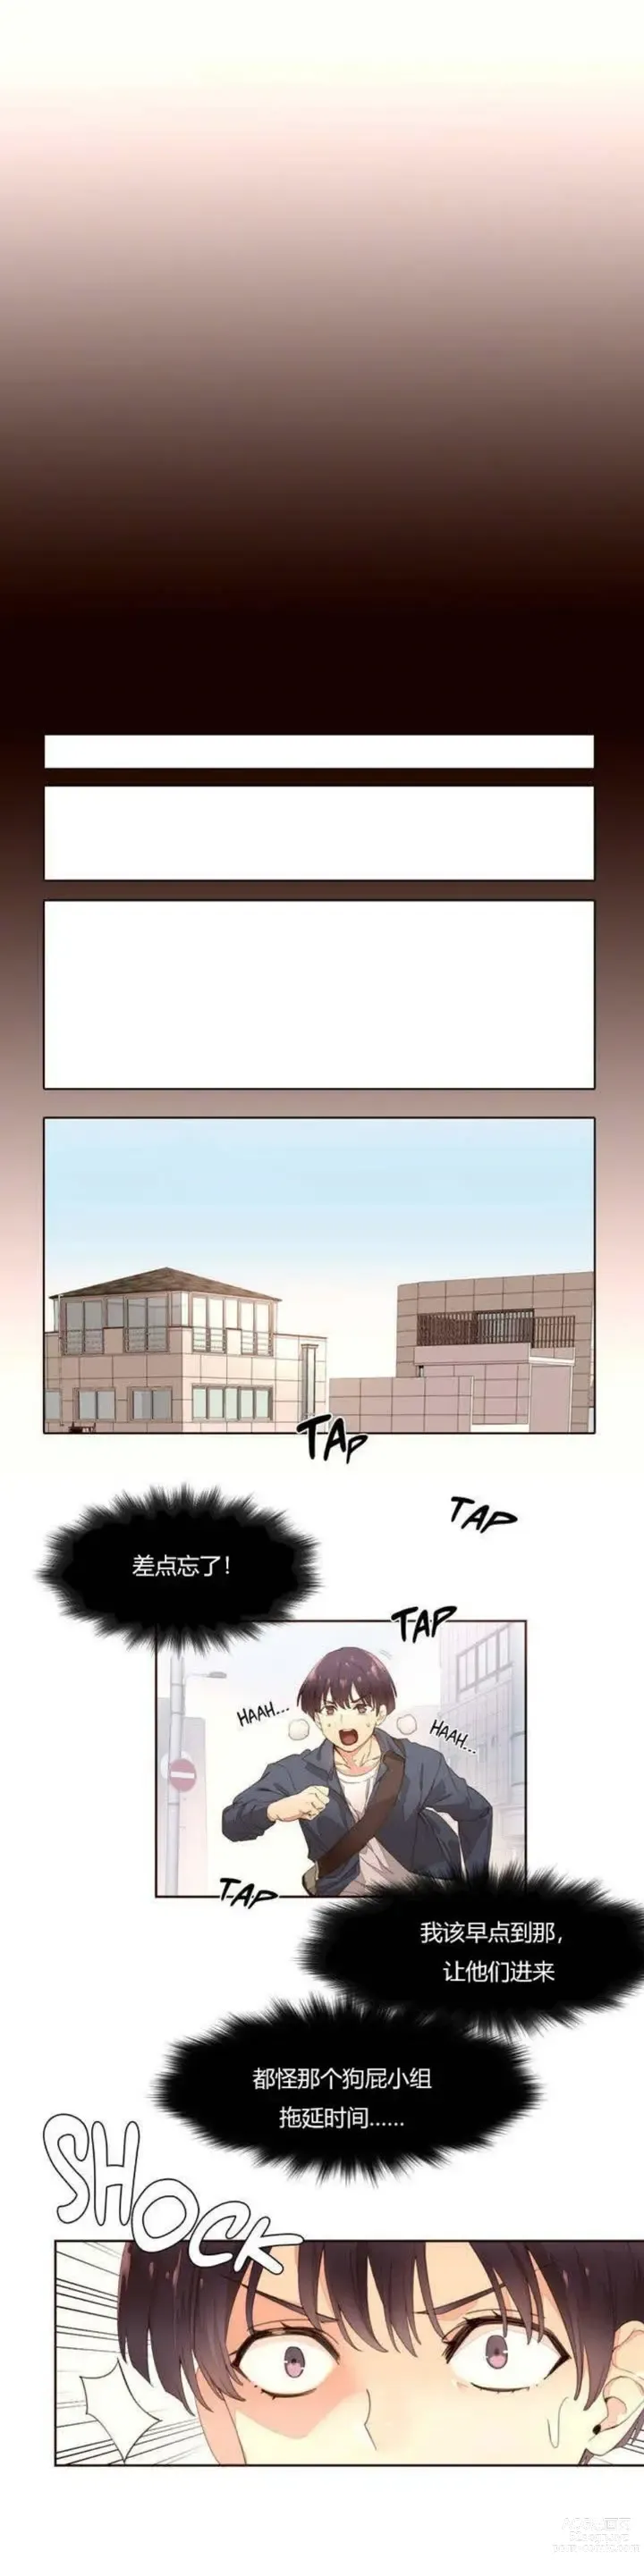 Page 9 of manga 秘香／費洛蒙香水／Pheromone Holic